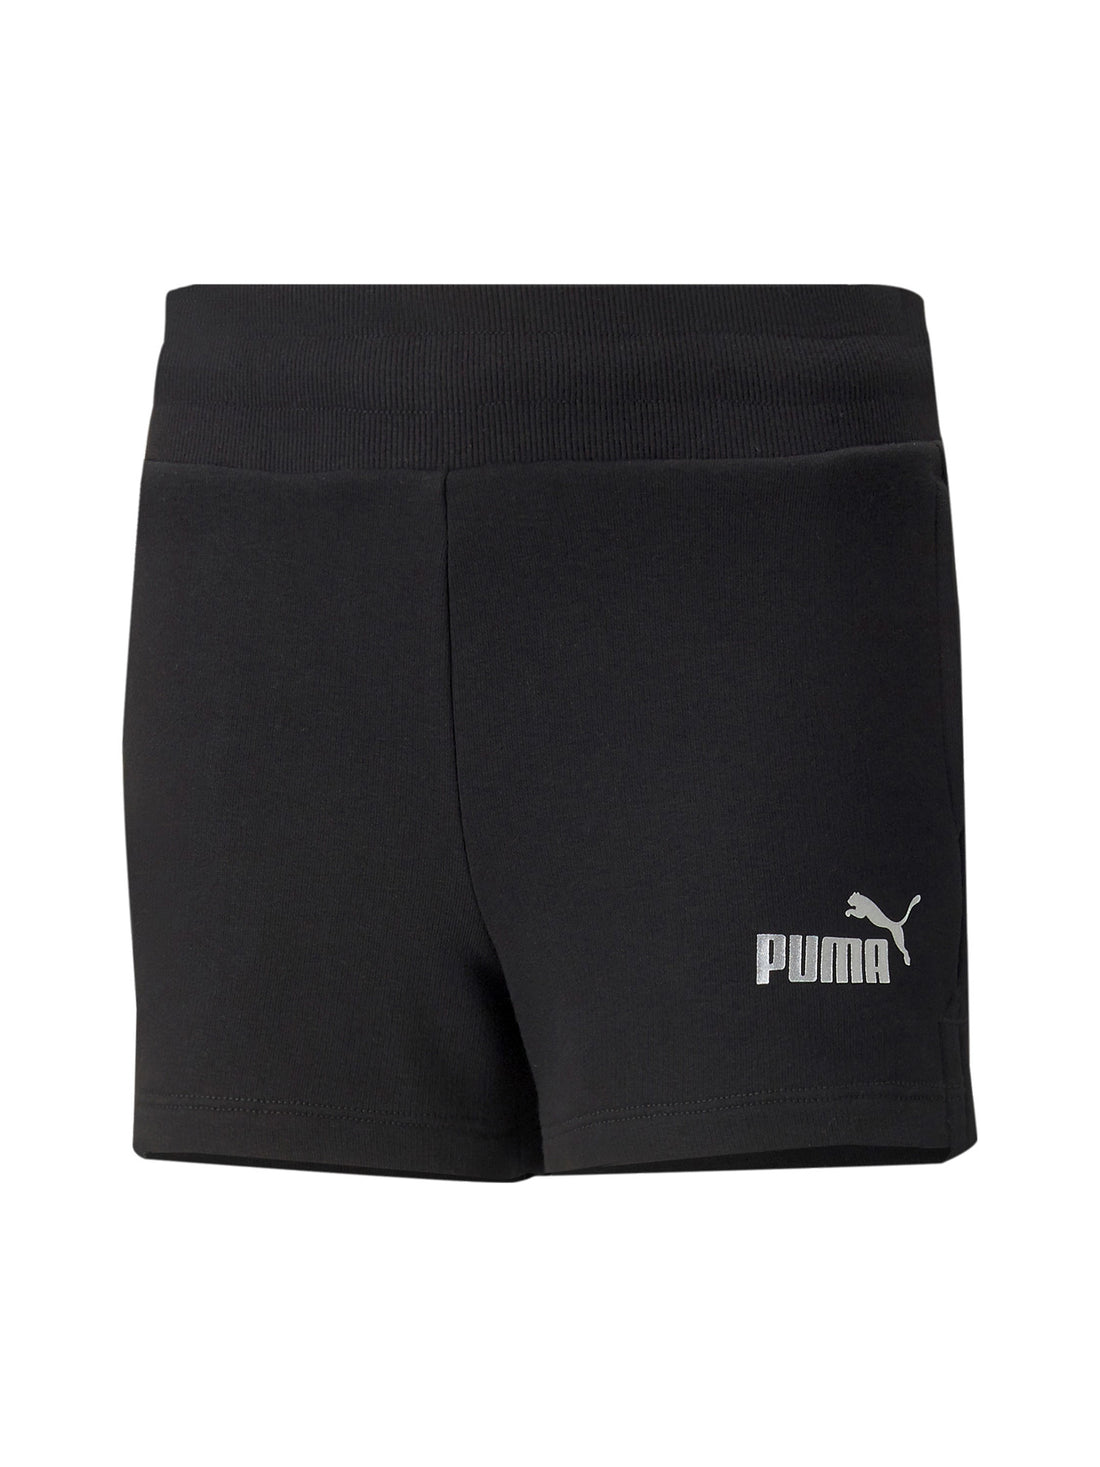 Puma Shorts 846963